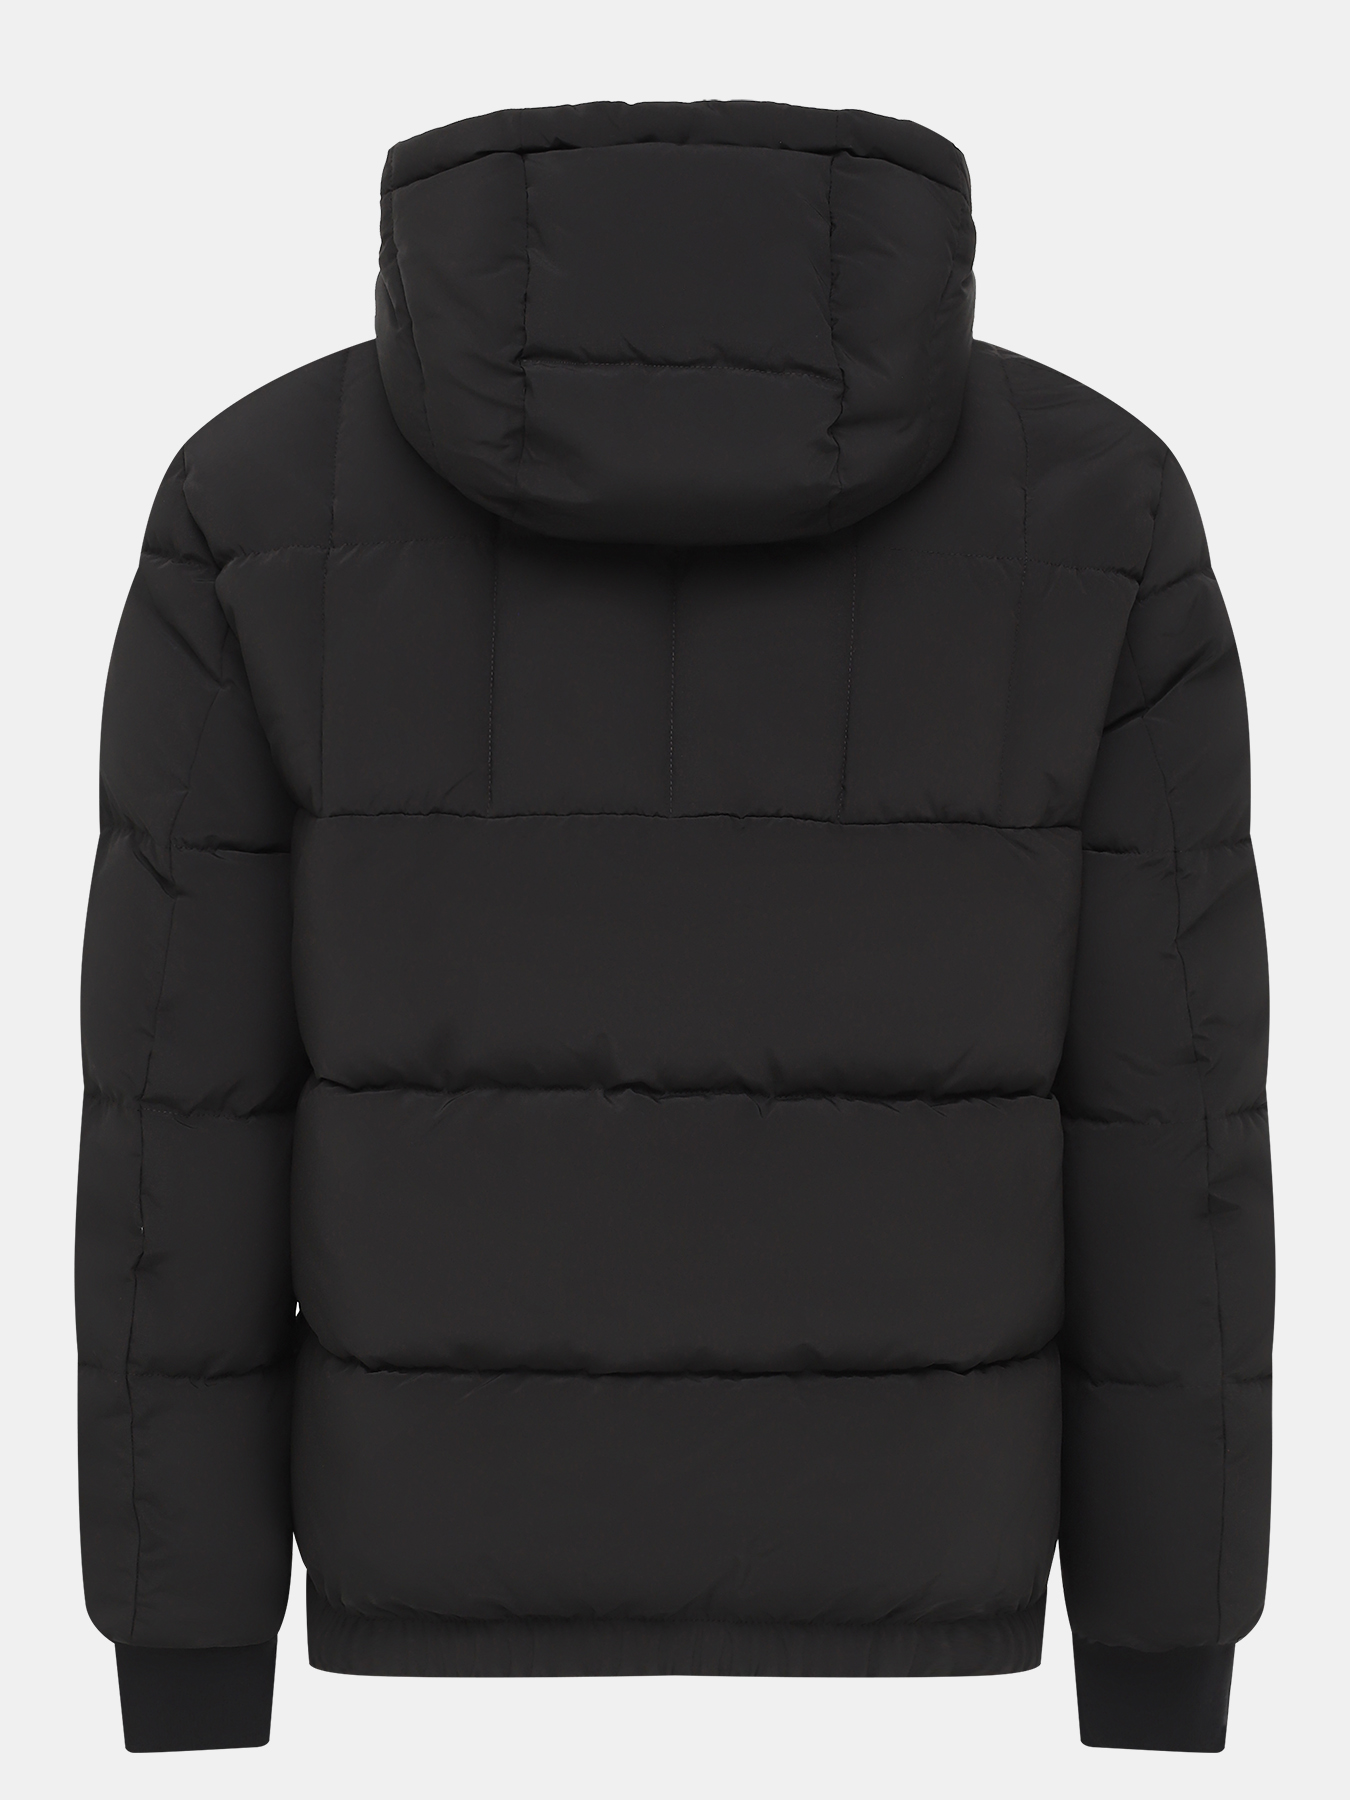 Куртка Balin HUGO 434495-043, цвет черный, размер 48-50 - фото 3